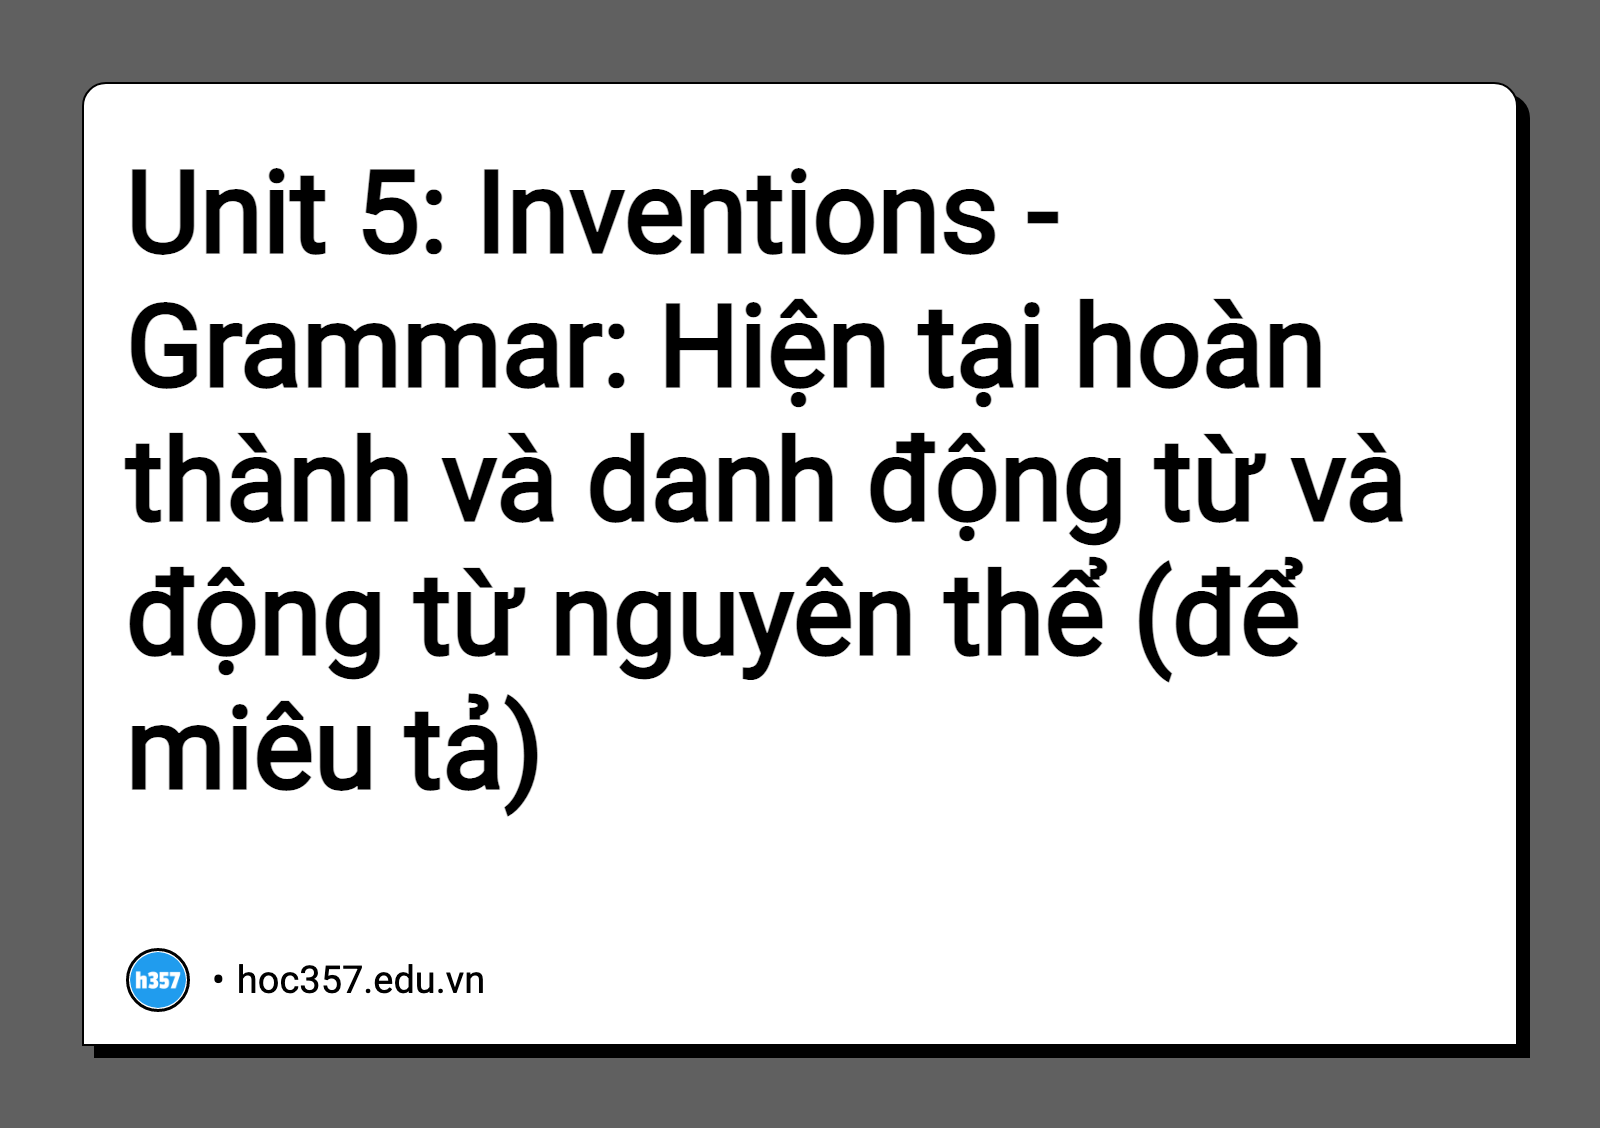 Hình minh họa Unit 5: Inventions - Grammar: Hiện tại hoàn thành và danh động từ và động từ nguyên thể (để miêu tả)